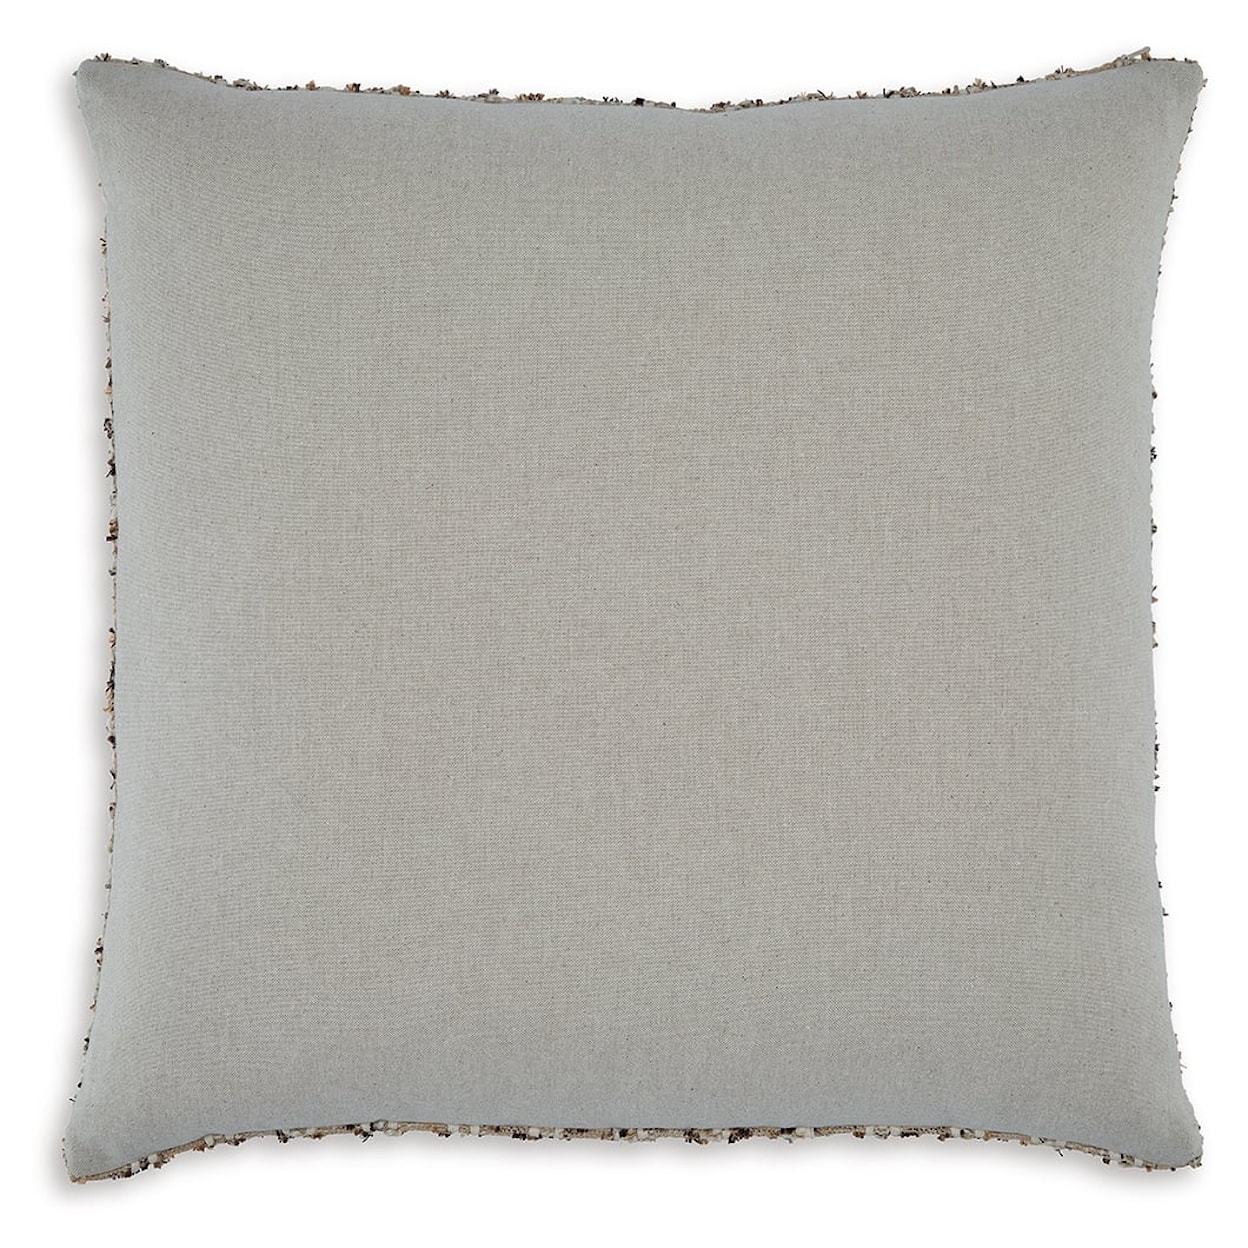 Ashley Furniture Signature Design Vorlane Pillow